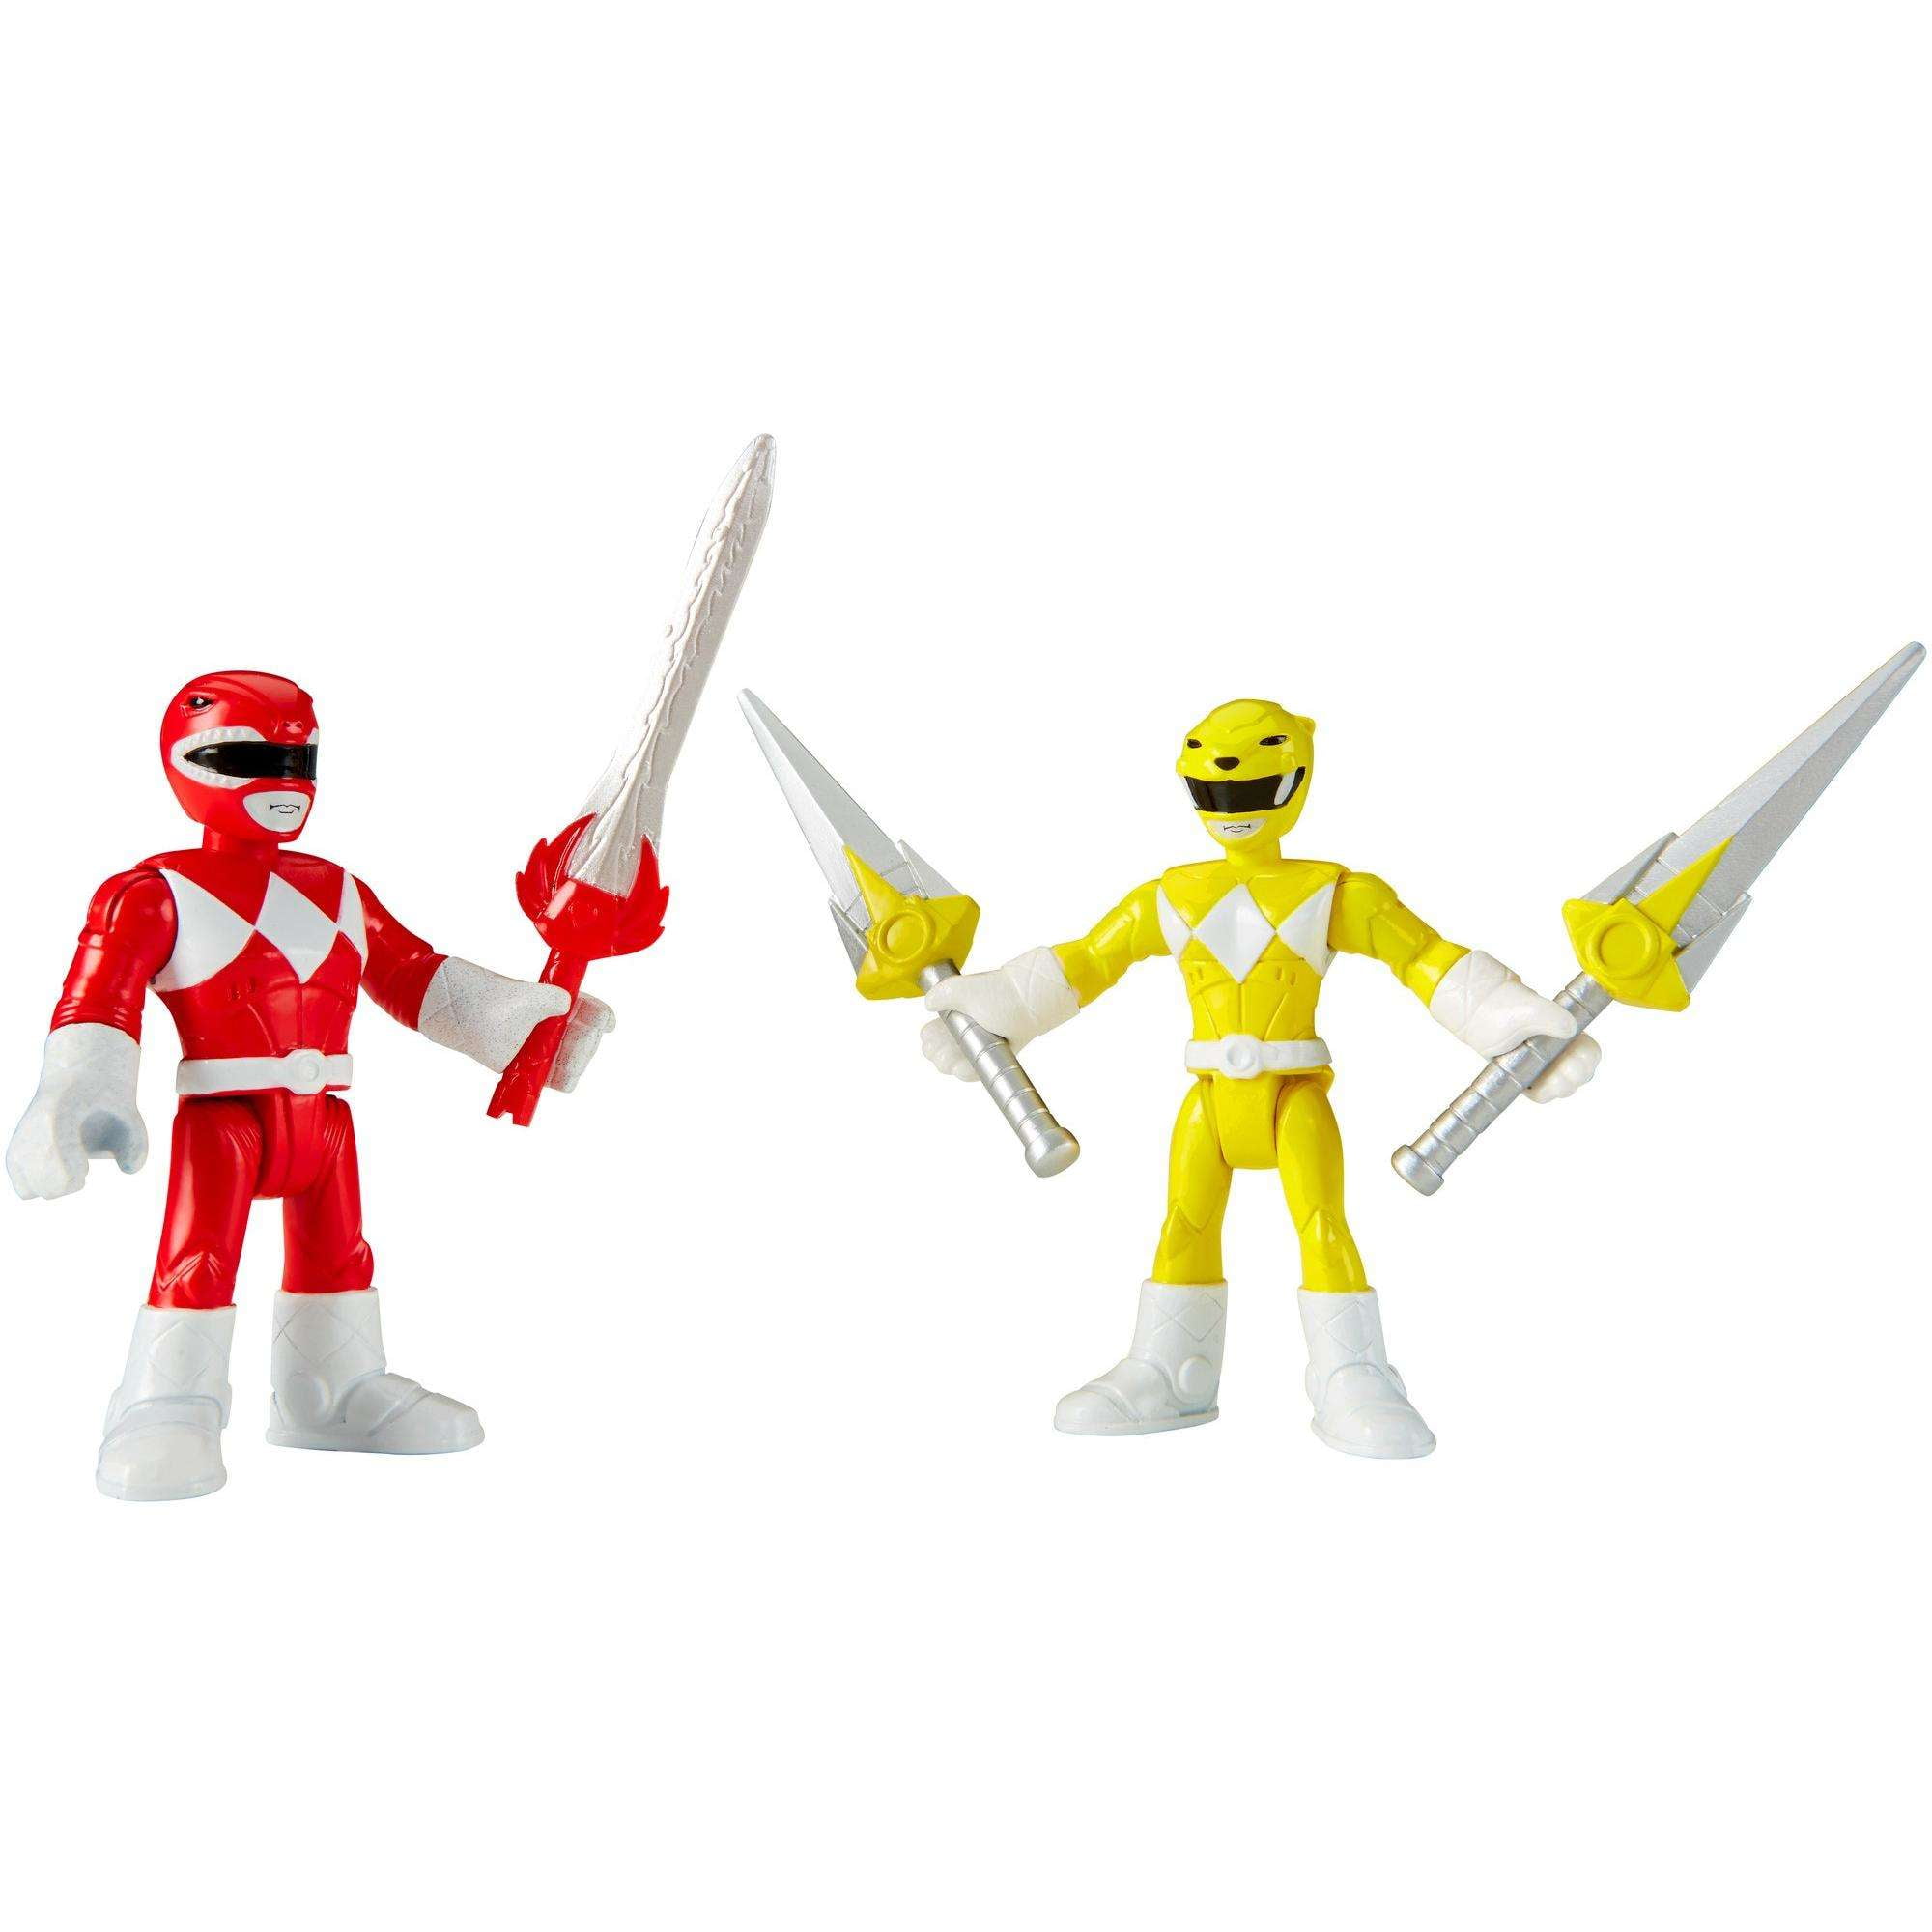 Fisher-Price Imaginext Power Rangers Red gold Ranger Action Figure  sduk 